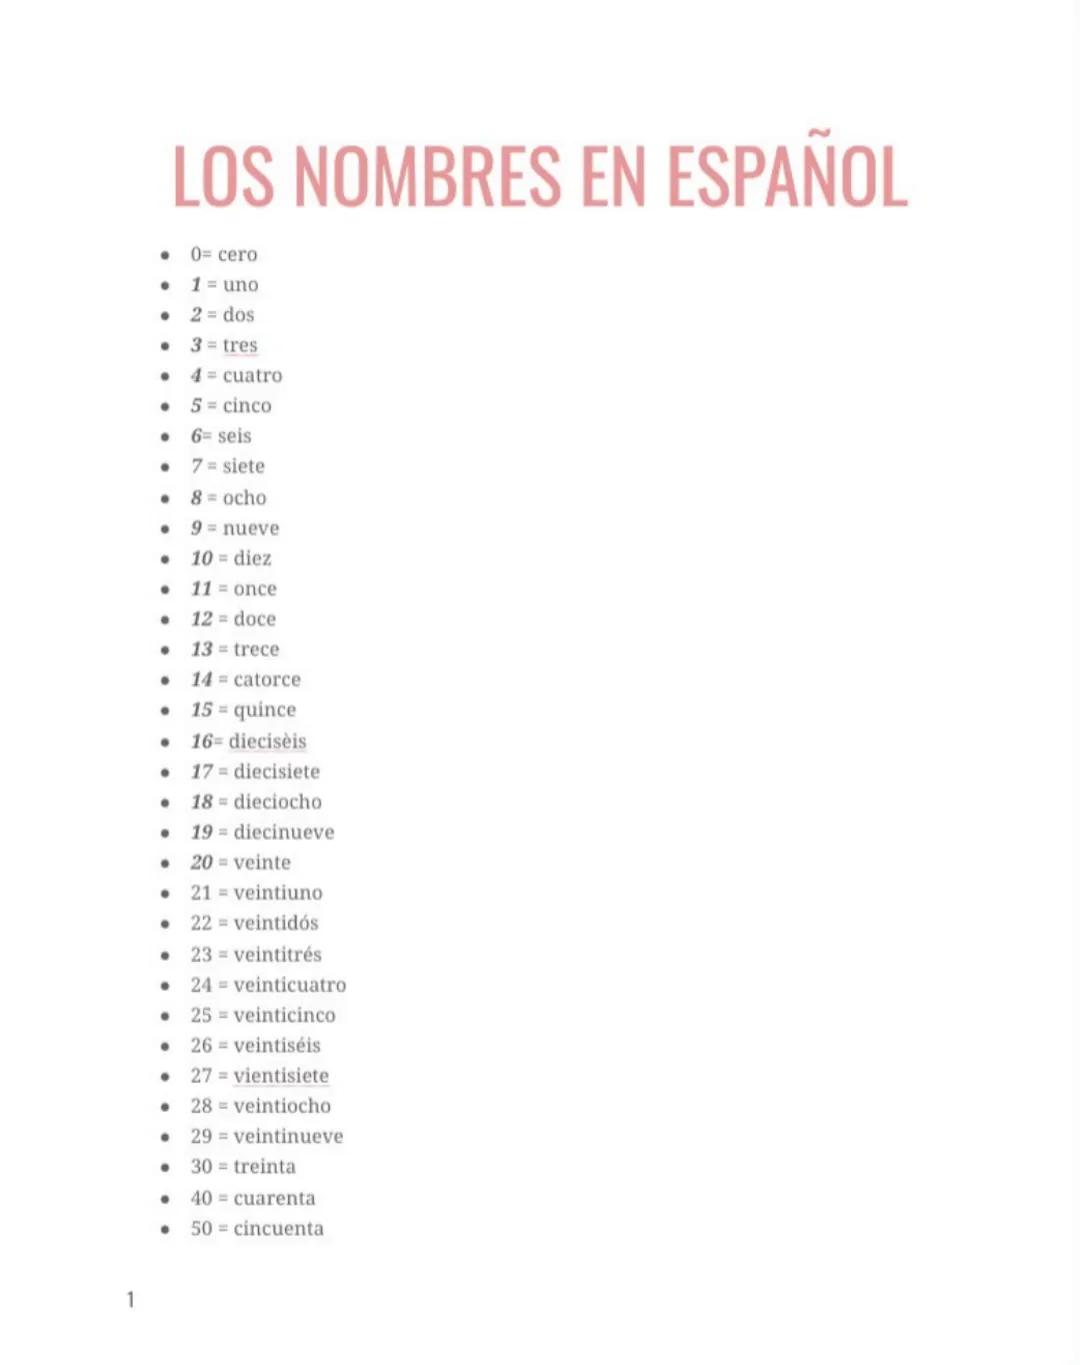 1
LOS NOMBRES EN ESPAÑOL
. 0= cero
1 = uno
2= dos
3= tres
●
●
●
●
●
.6= seis
●
●
●
●
●
●
●
●
●
17
diecisiete
18 dieciocho
. 19 diecinueve
20